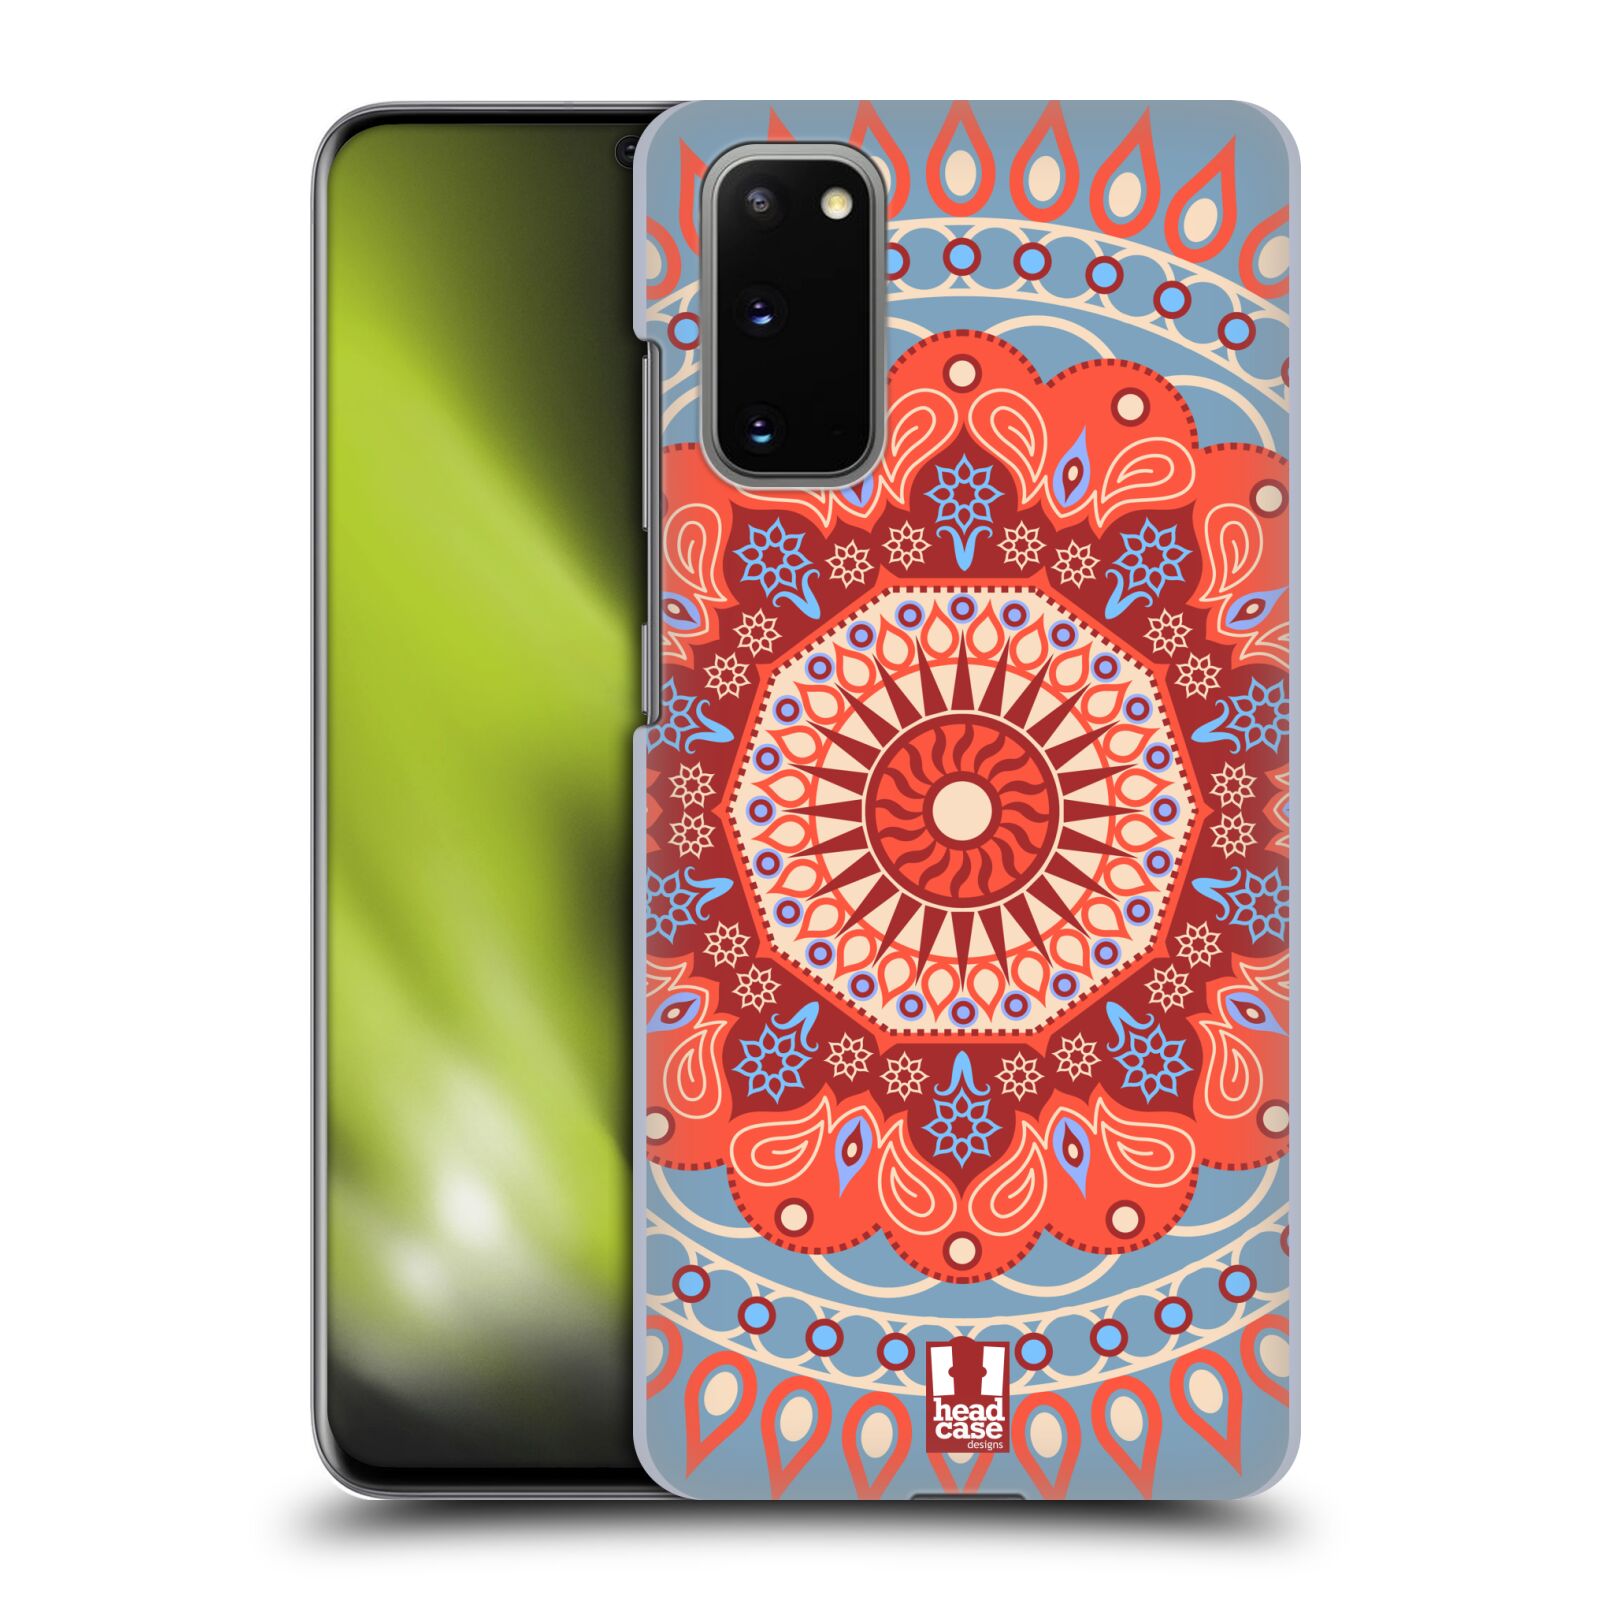 Pouzdro na mobil Samsung Galaxy S20 - HEAD CASE - vzor Indie Mandala slunce barevný motiv ČERVENÁ A MODRÁ